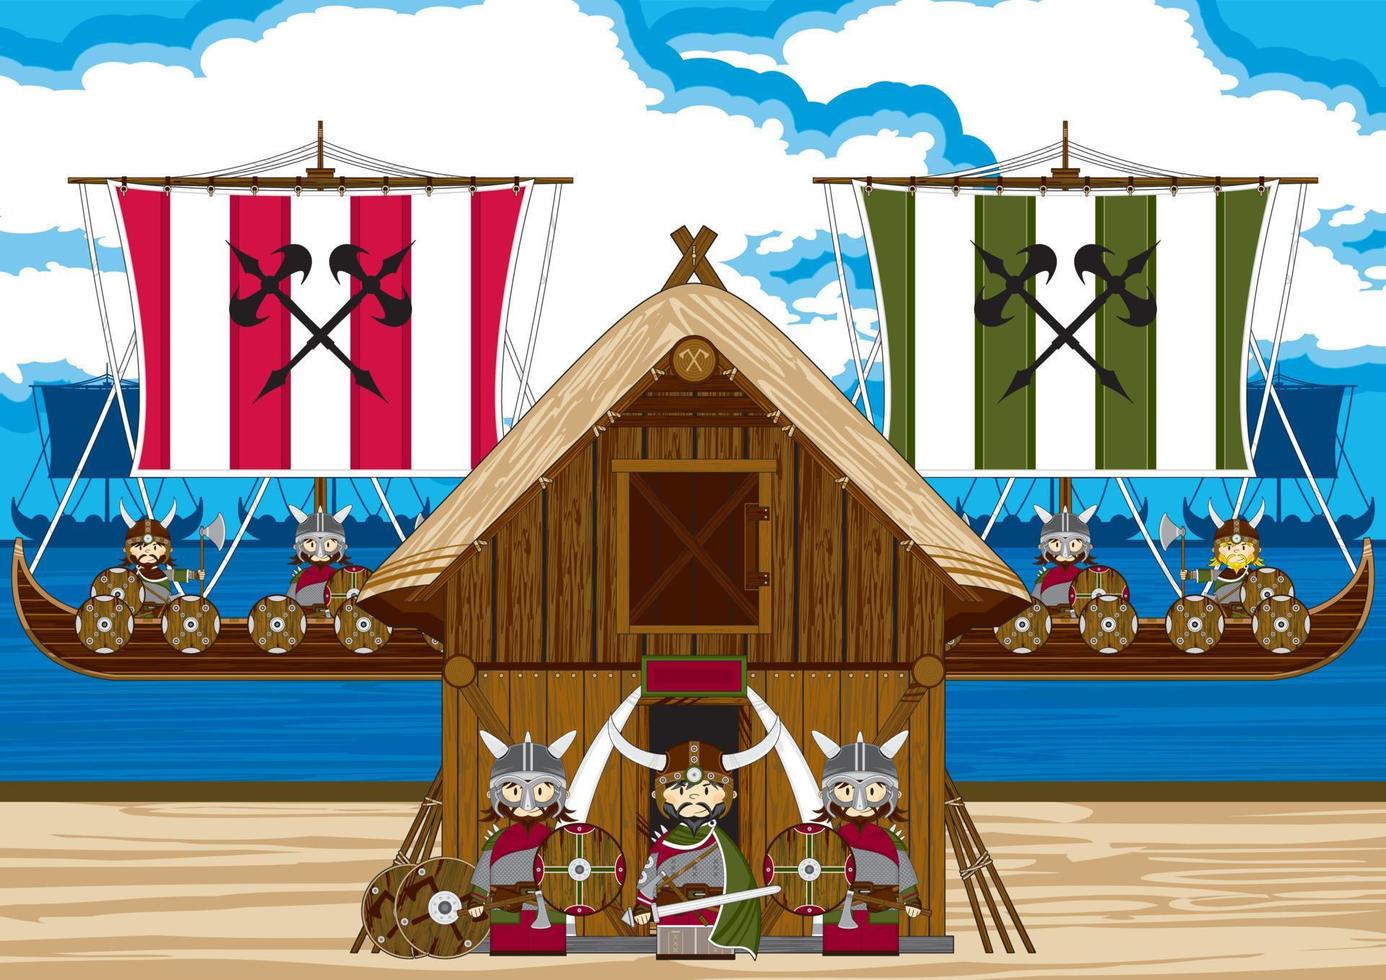 dessin animé viking guerriers sur le plage avec chaloupes norrois histoire illustration vecteur